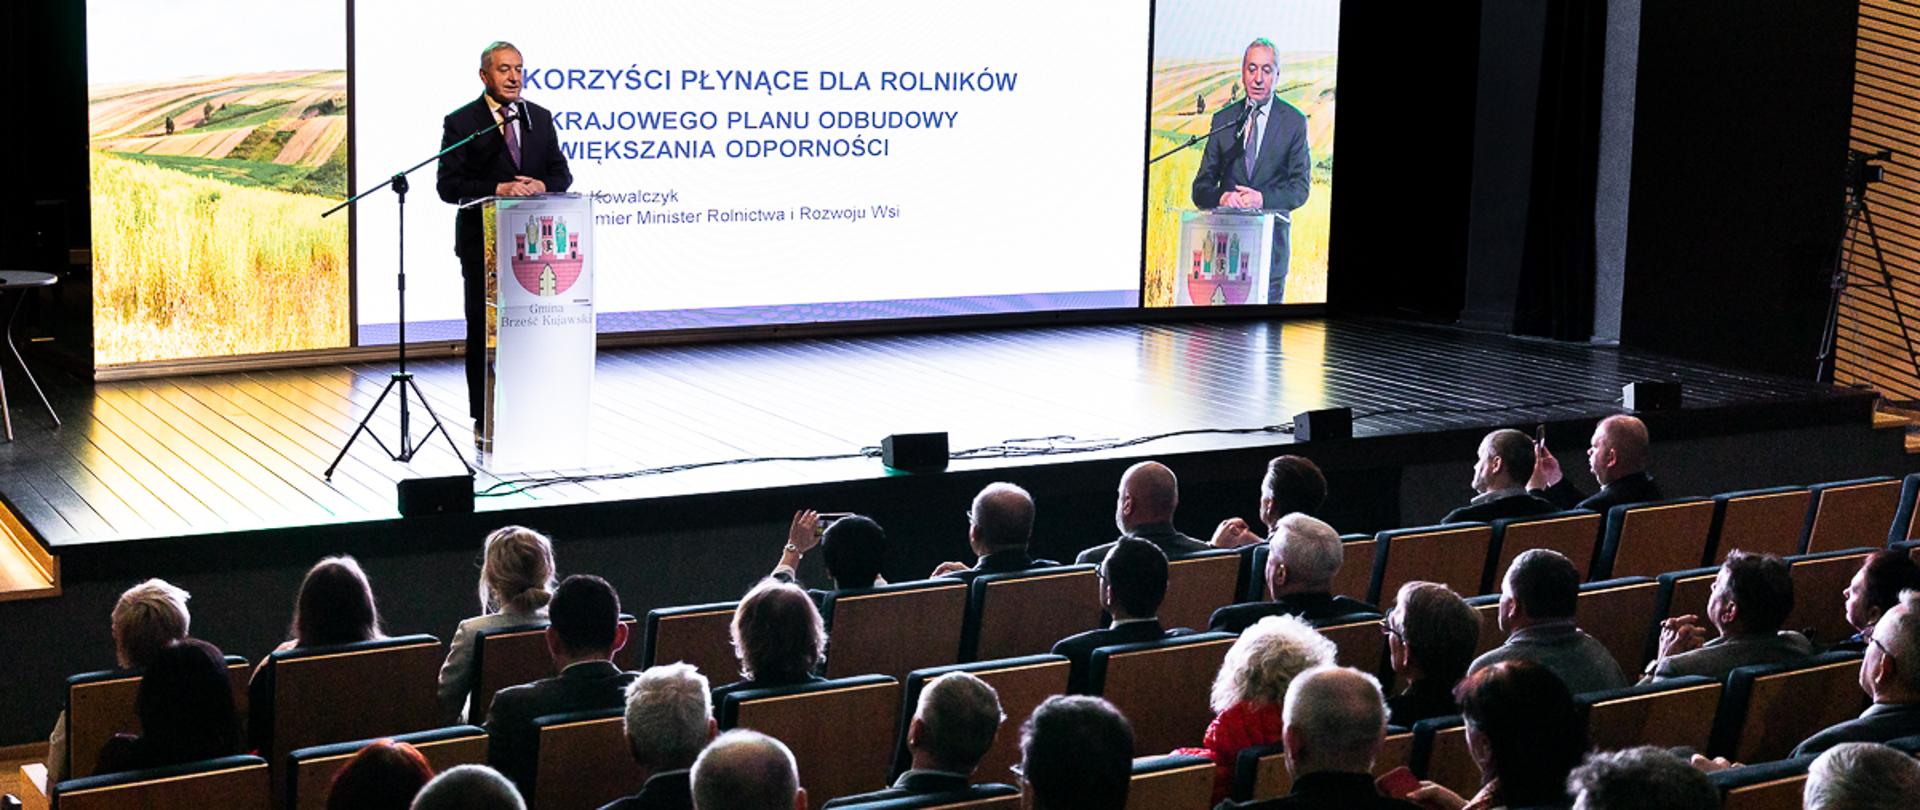 Konferencja Krajowy Plan Odbudowy i Zwiększania Odporności w Brześciu Kujawskim (fot. MRiRW)